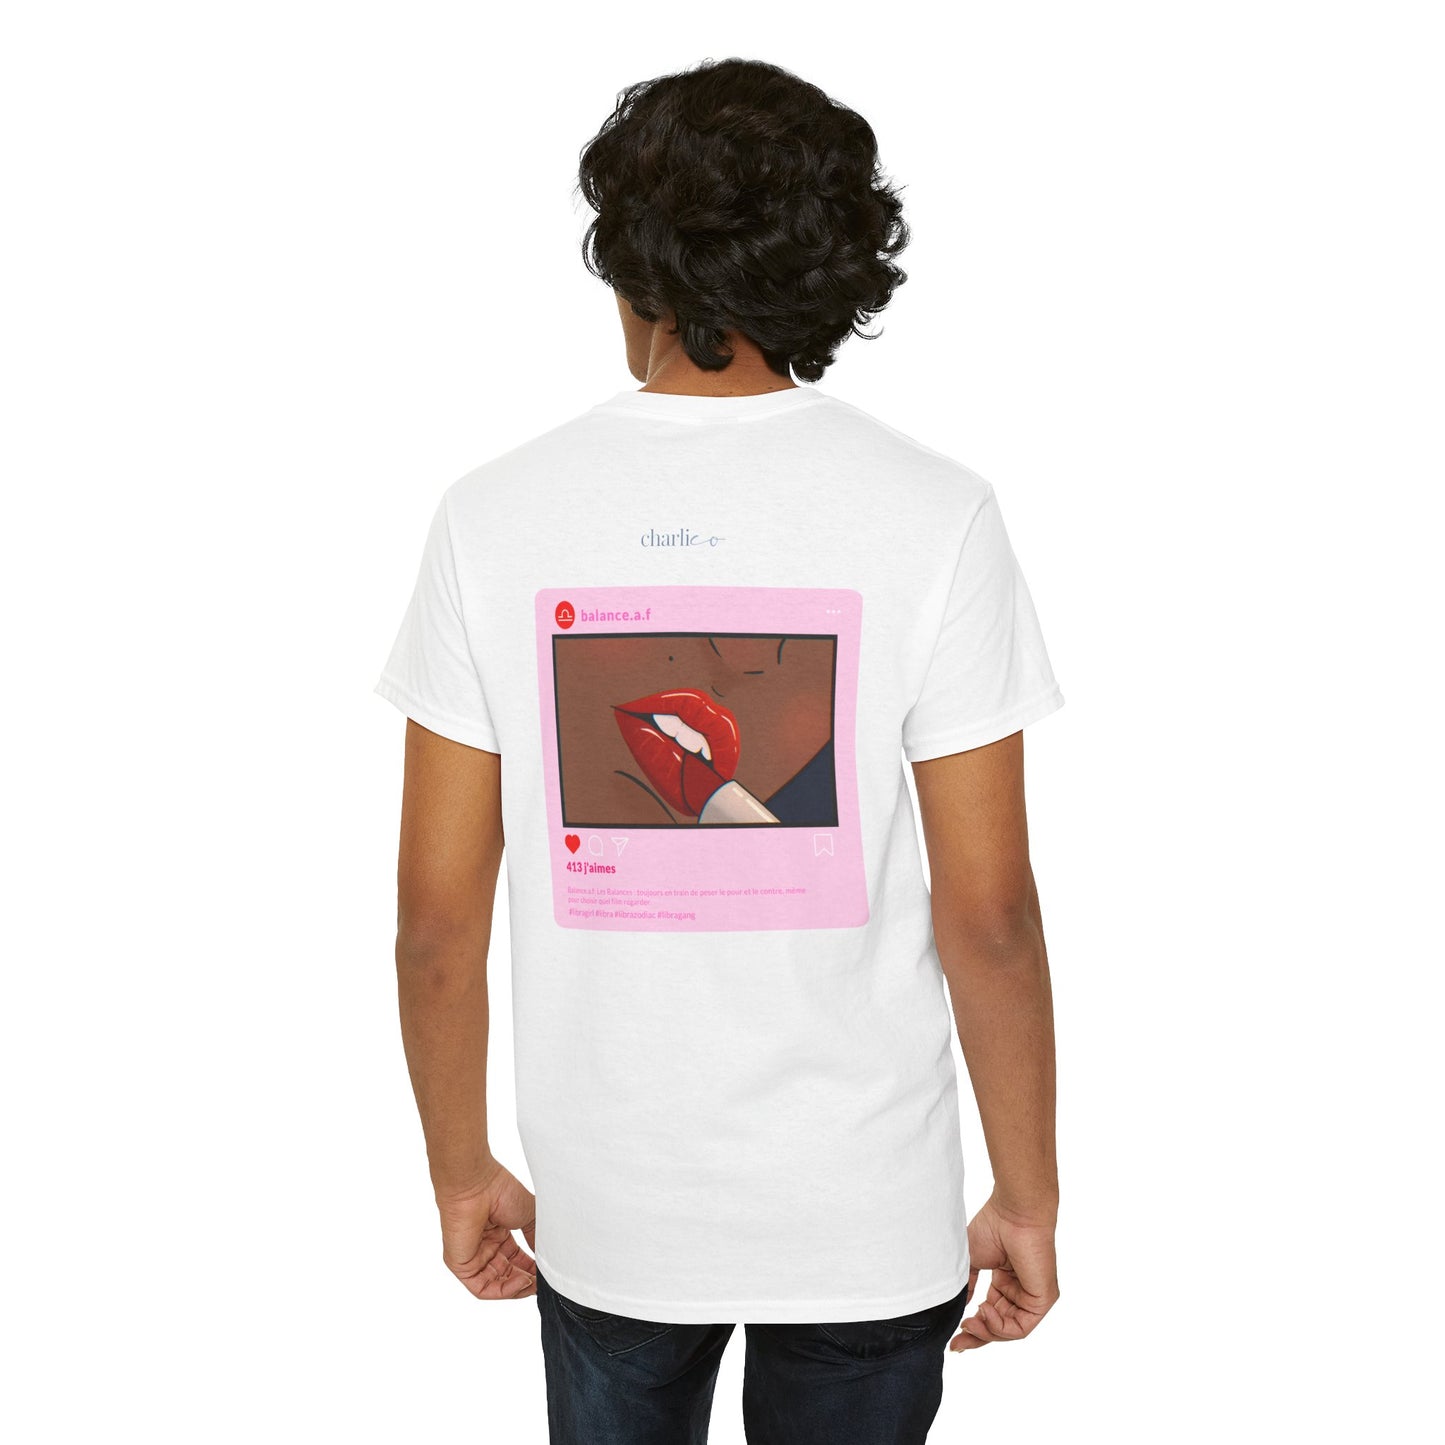 Printable t-shirt -BALANCE- for adults